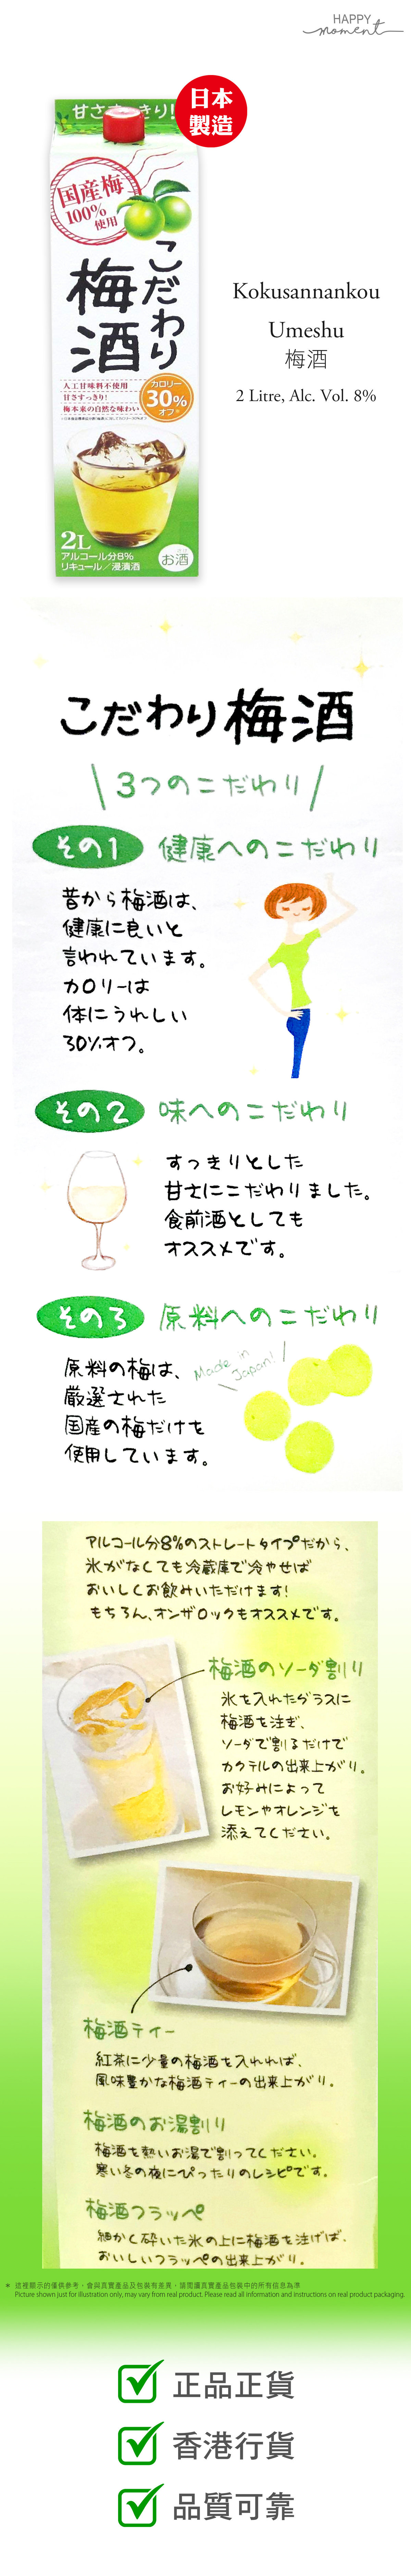 Kunizakari | 3盒- 國盛梅酒(酒精度8%) うめ酒パックKodawari Umeshu Lady (500ml x3) #sake  #日本酒#和歌山| HKTVmall 香港最大網購平台